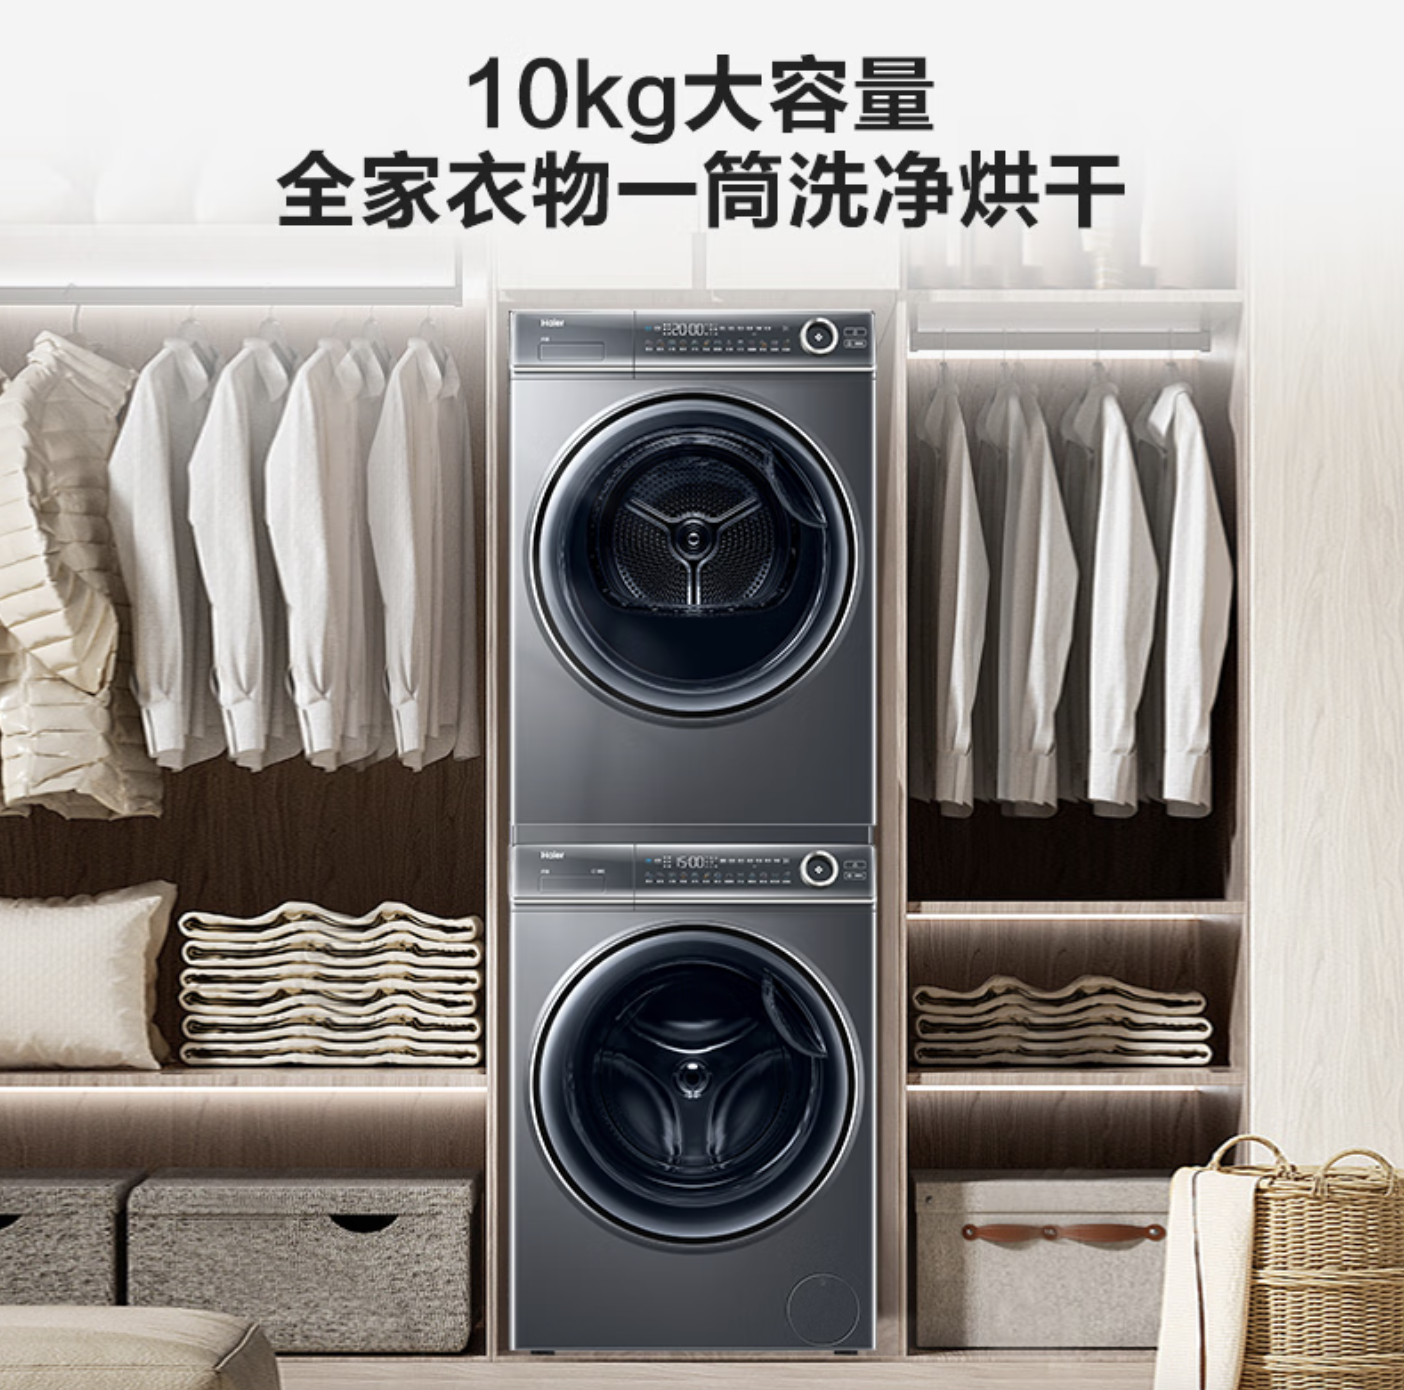 XQG100-BD14376LU1+EHGS100176XSU1洗烘套装 10KG（需付定金20元）